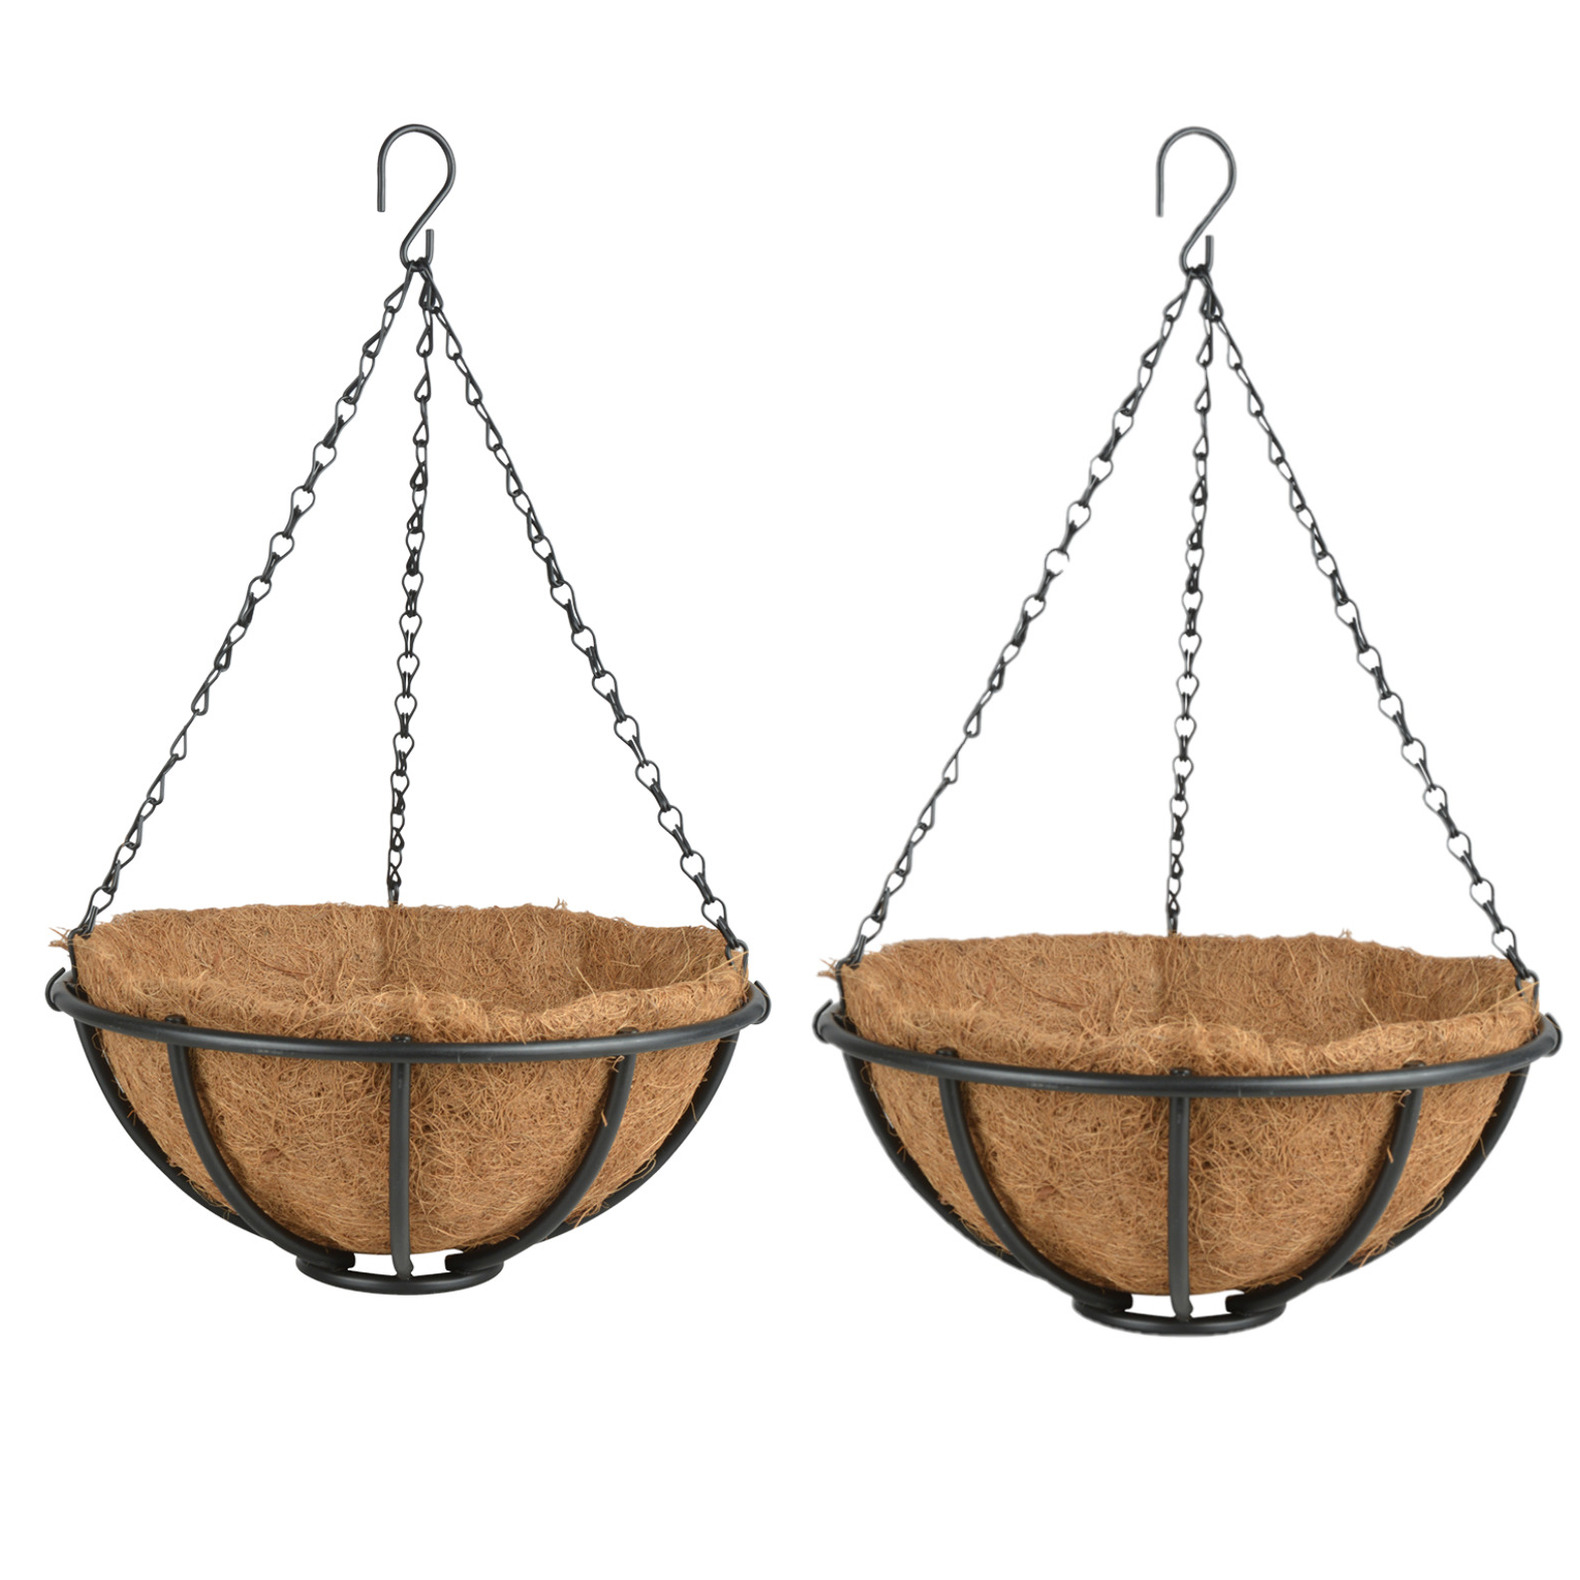 2x stuks metalen hanging baskets-plantenbakken met ketting 30 cm inclusief kokosinlegvel